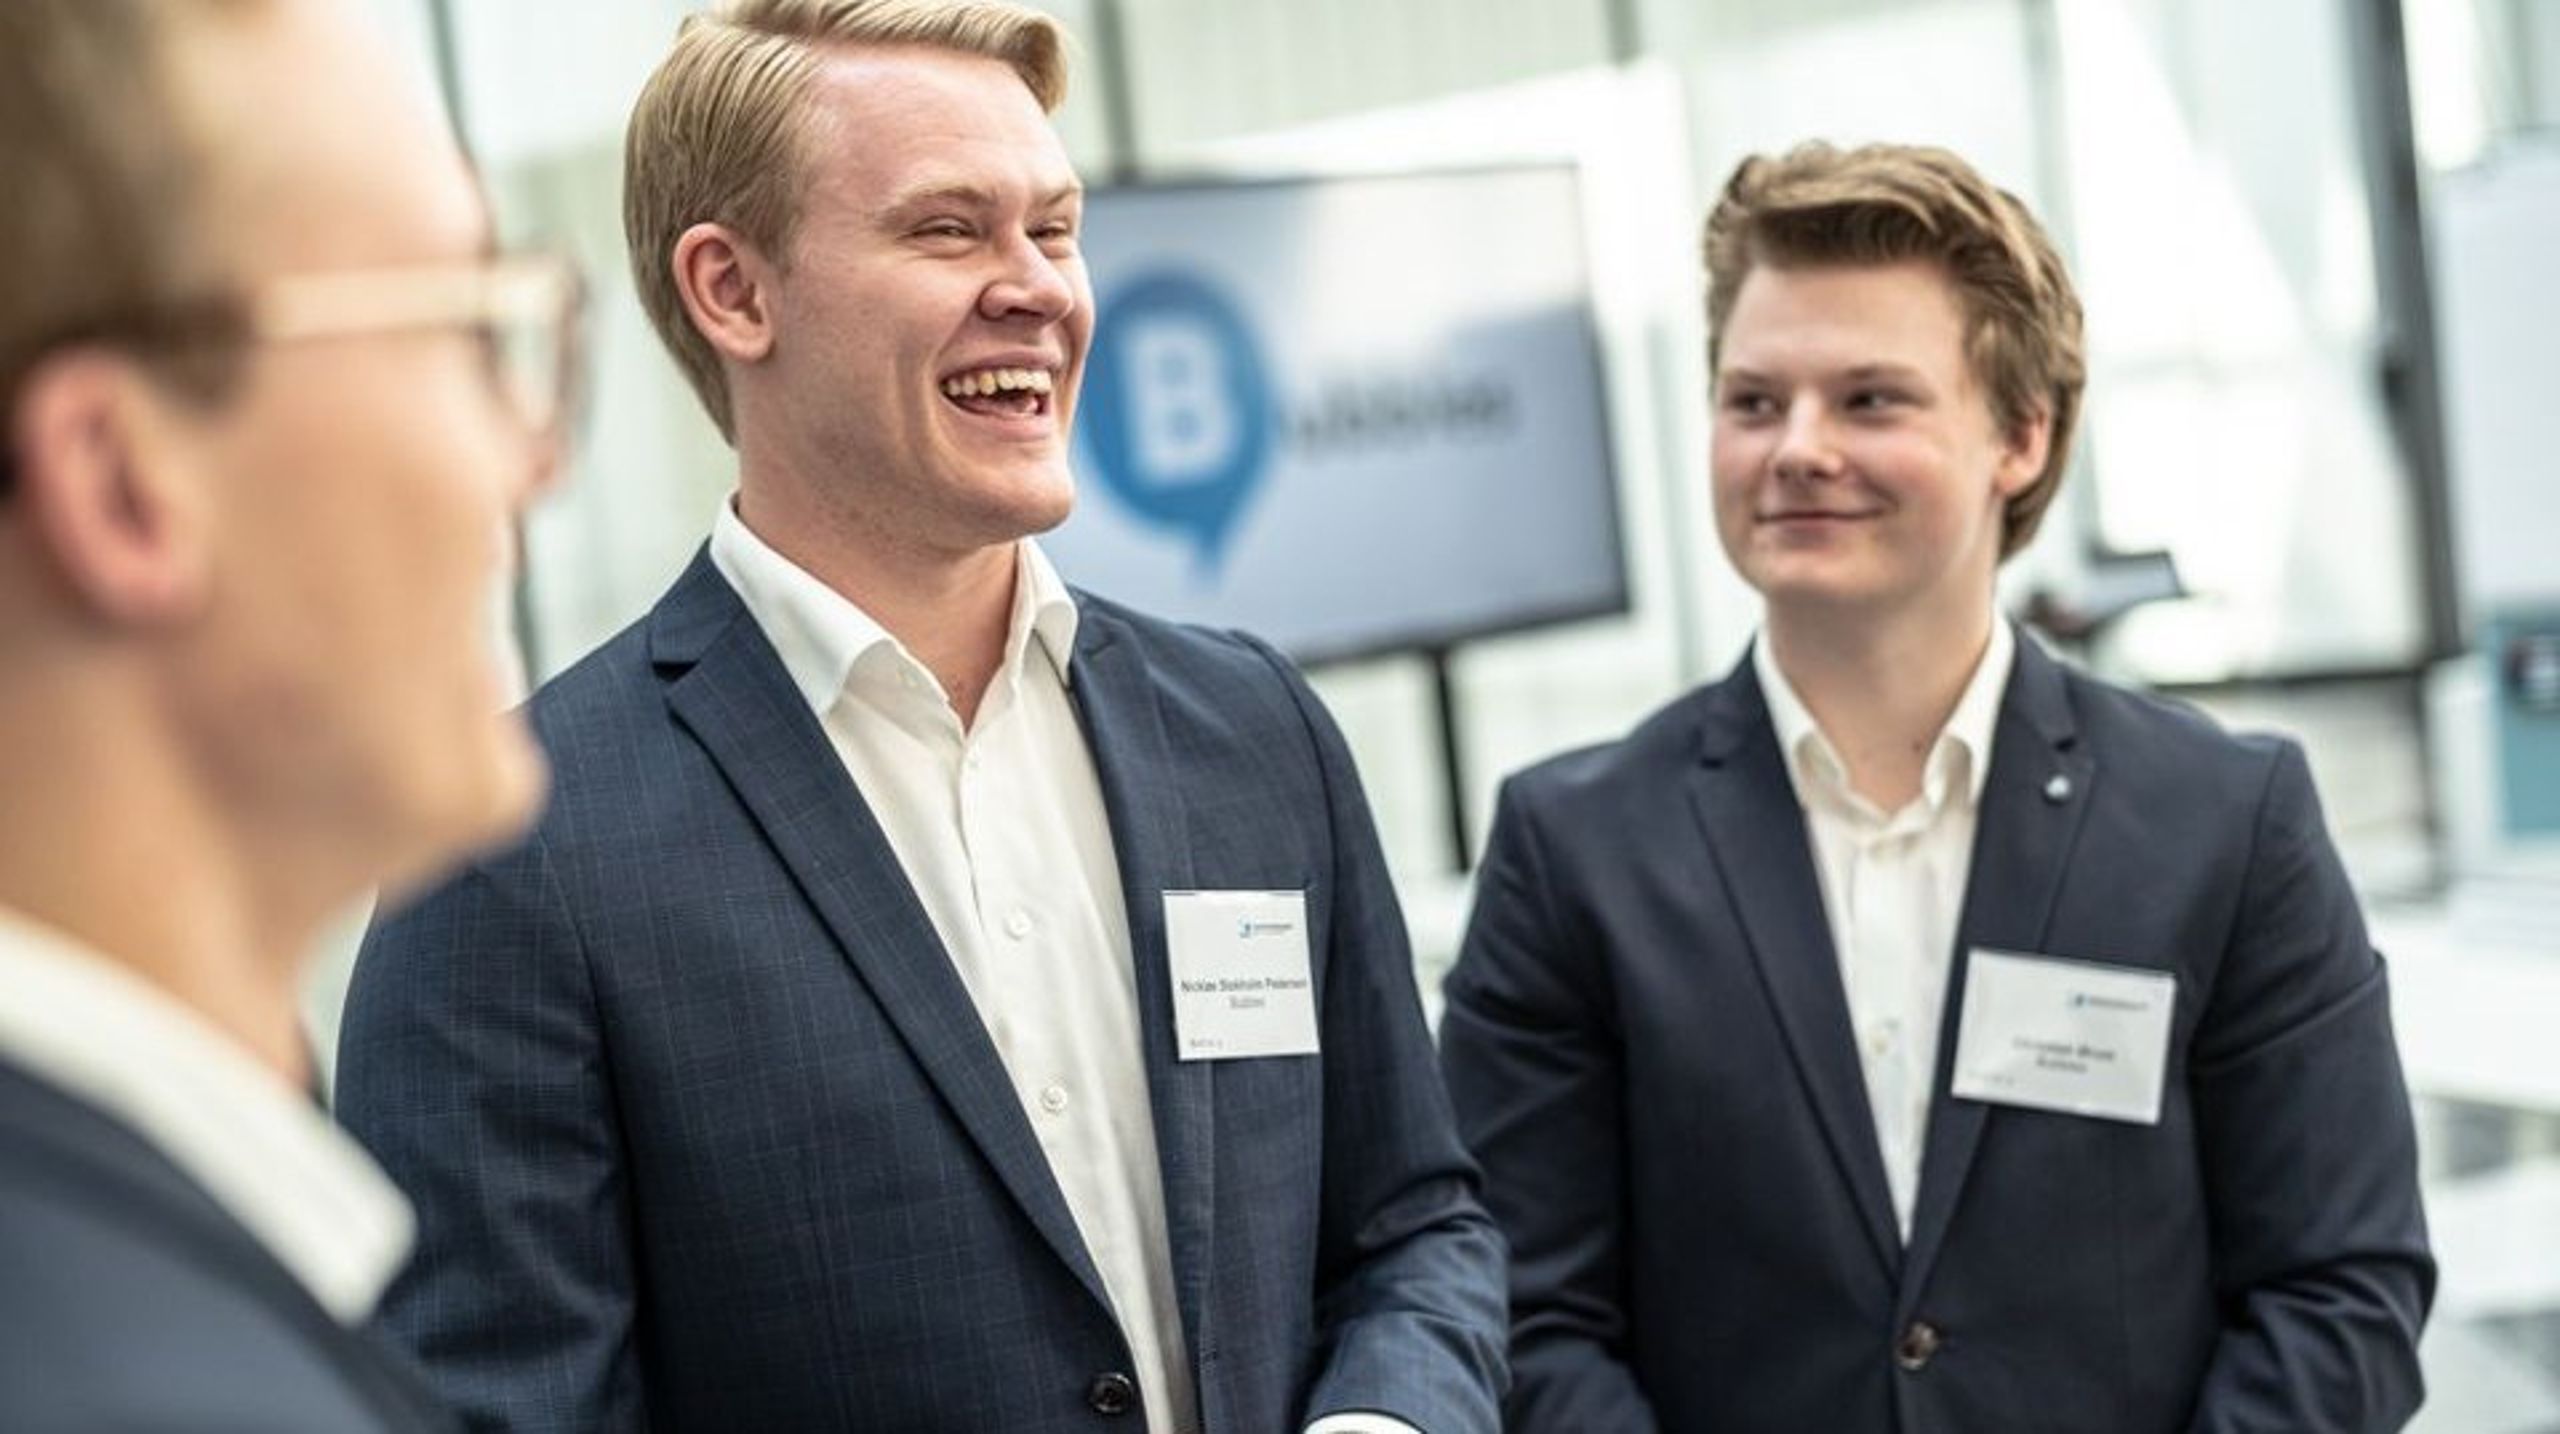 Christian Ørum, Nicklas Stokholm og Kevin Jensen står bag den&nbsp;teknologiske opfindelse&nbsp;Bubbles, som også vandt det danske og europæiske&nbsp;mesterskab i entreprenørskab.&nbsp;